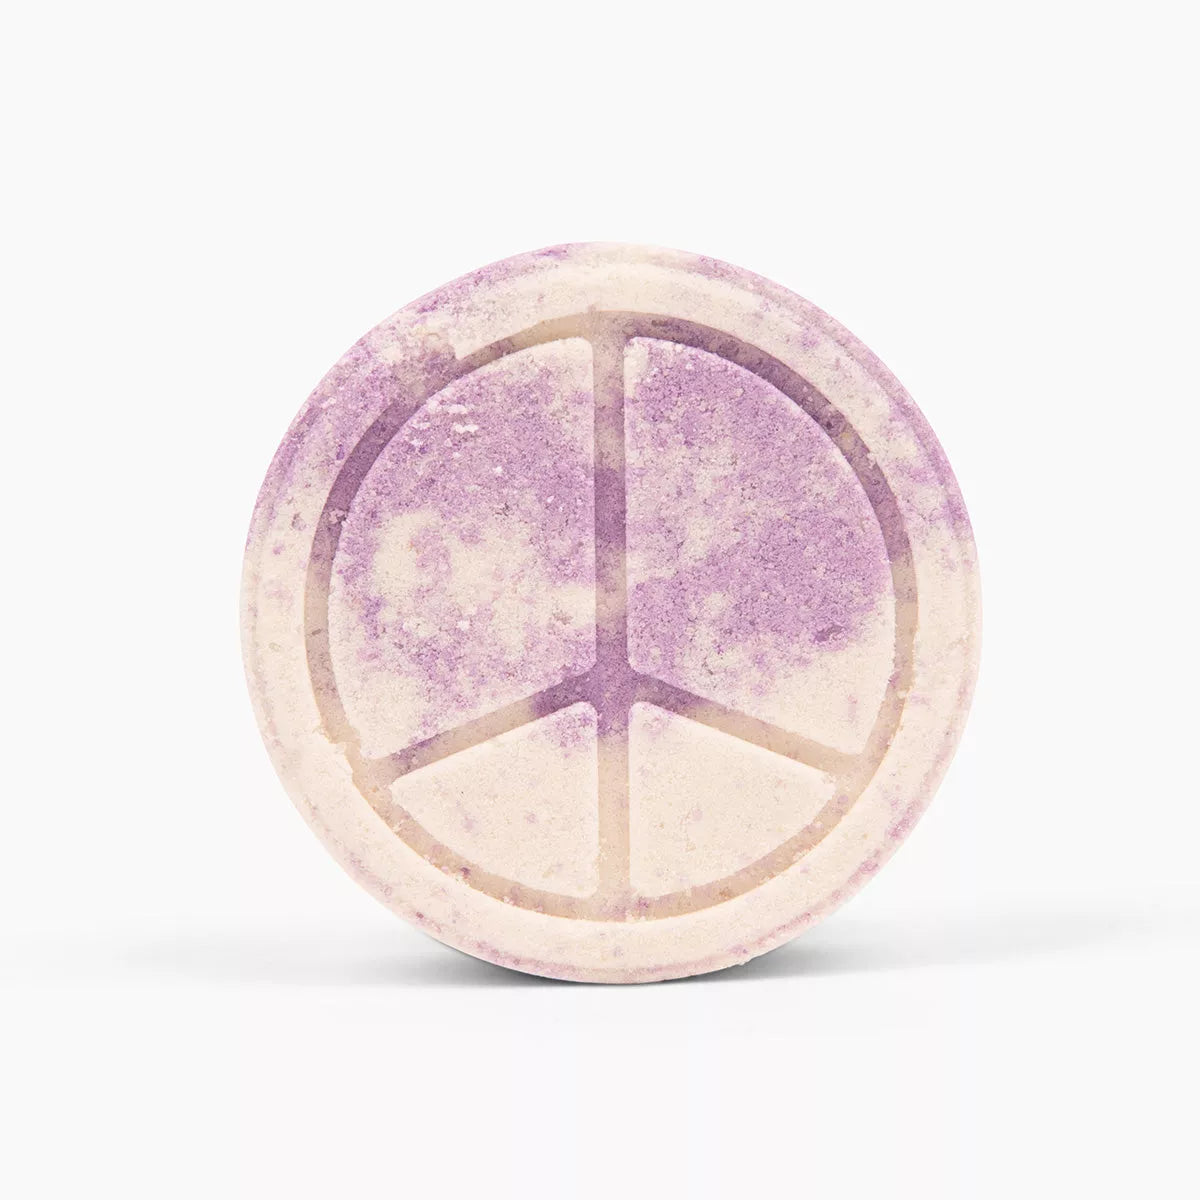 Lavender Bath Butta' Bomb